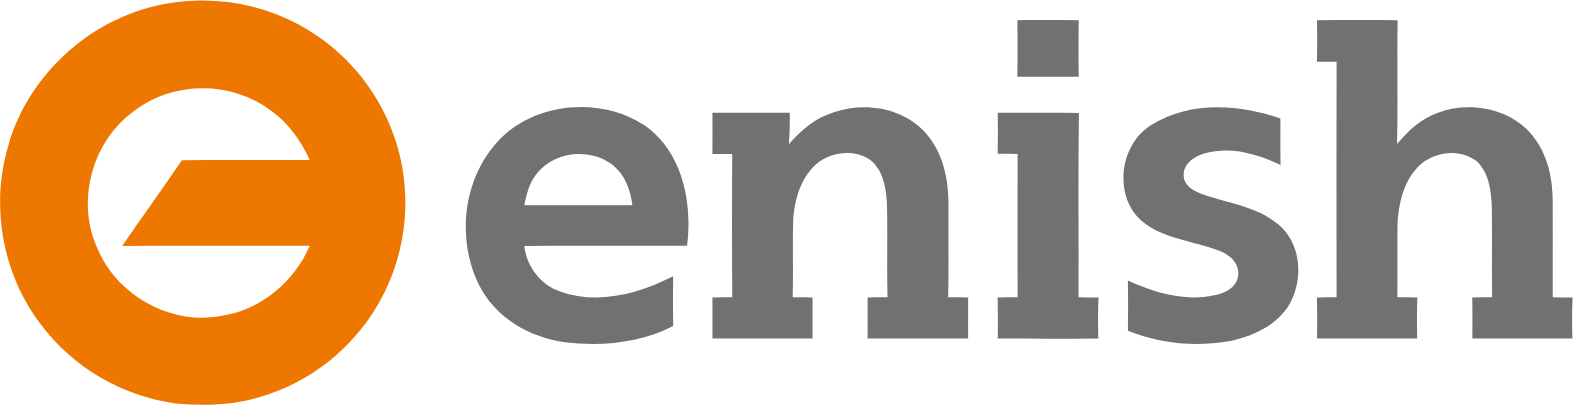 enish logo large (transparent PNG)